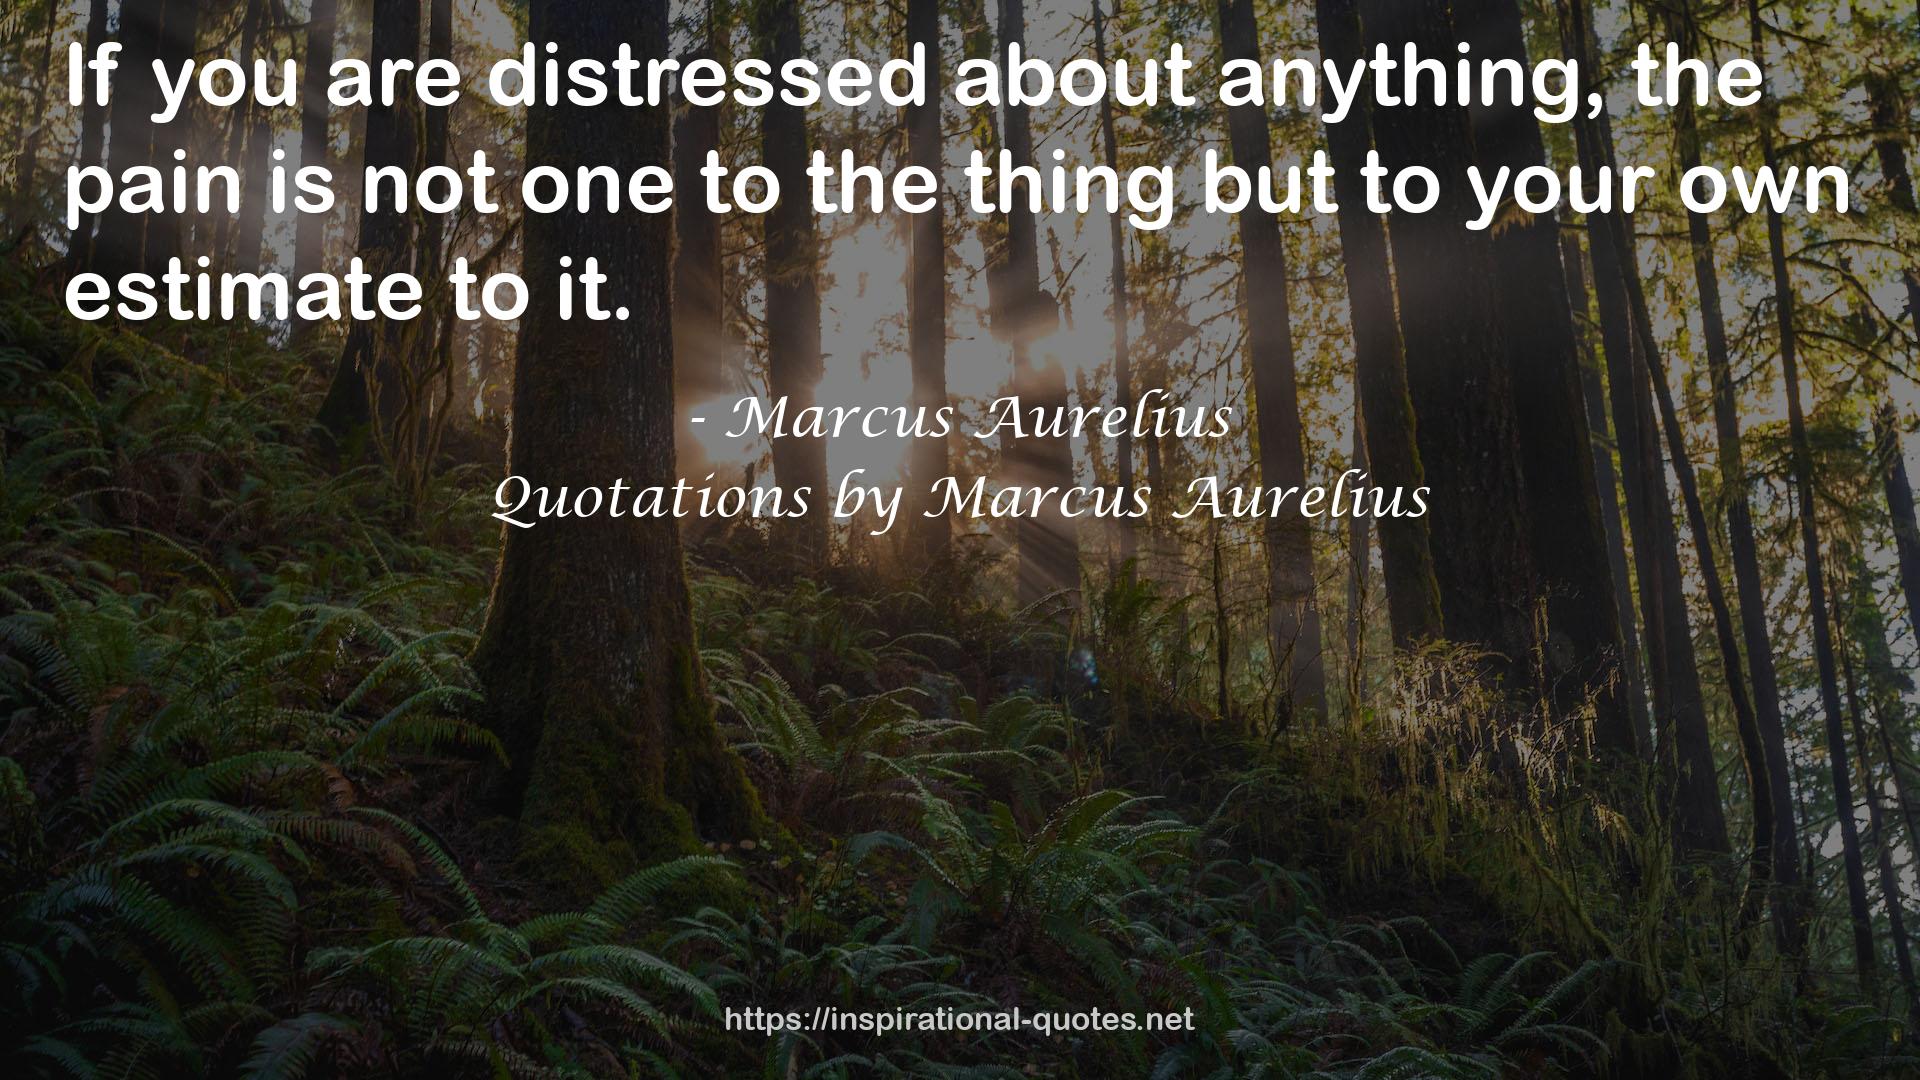 Quotations by Marcus Aurelius QUOTES